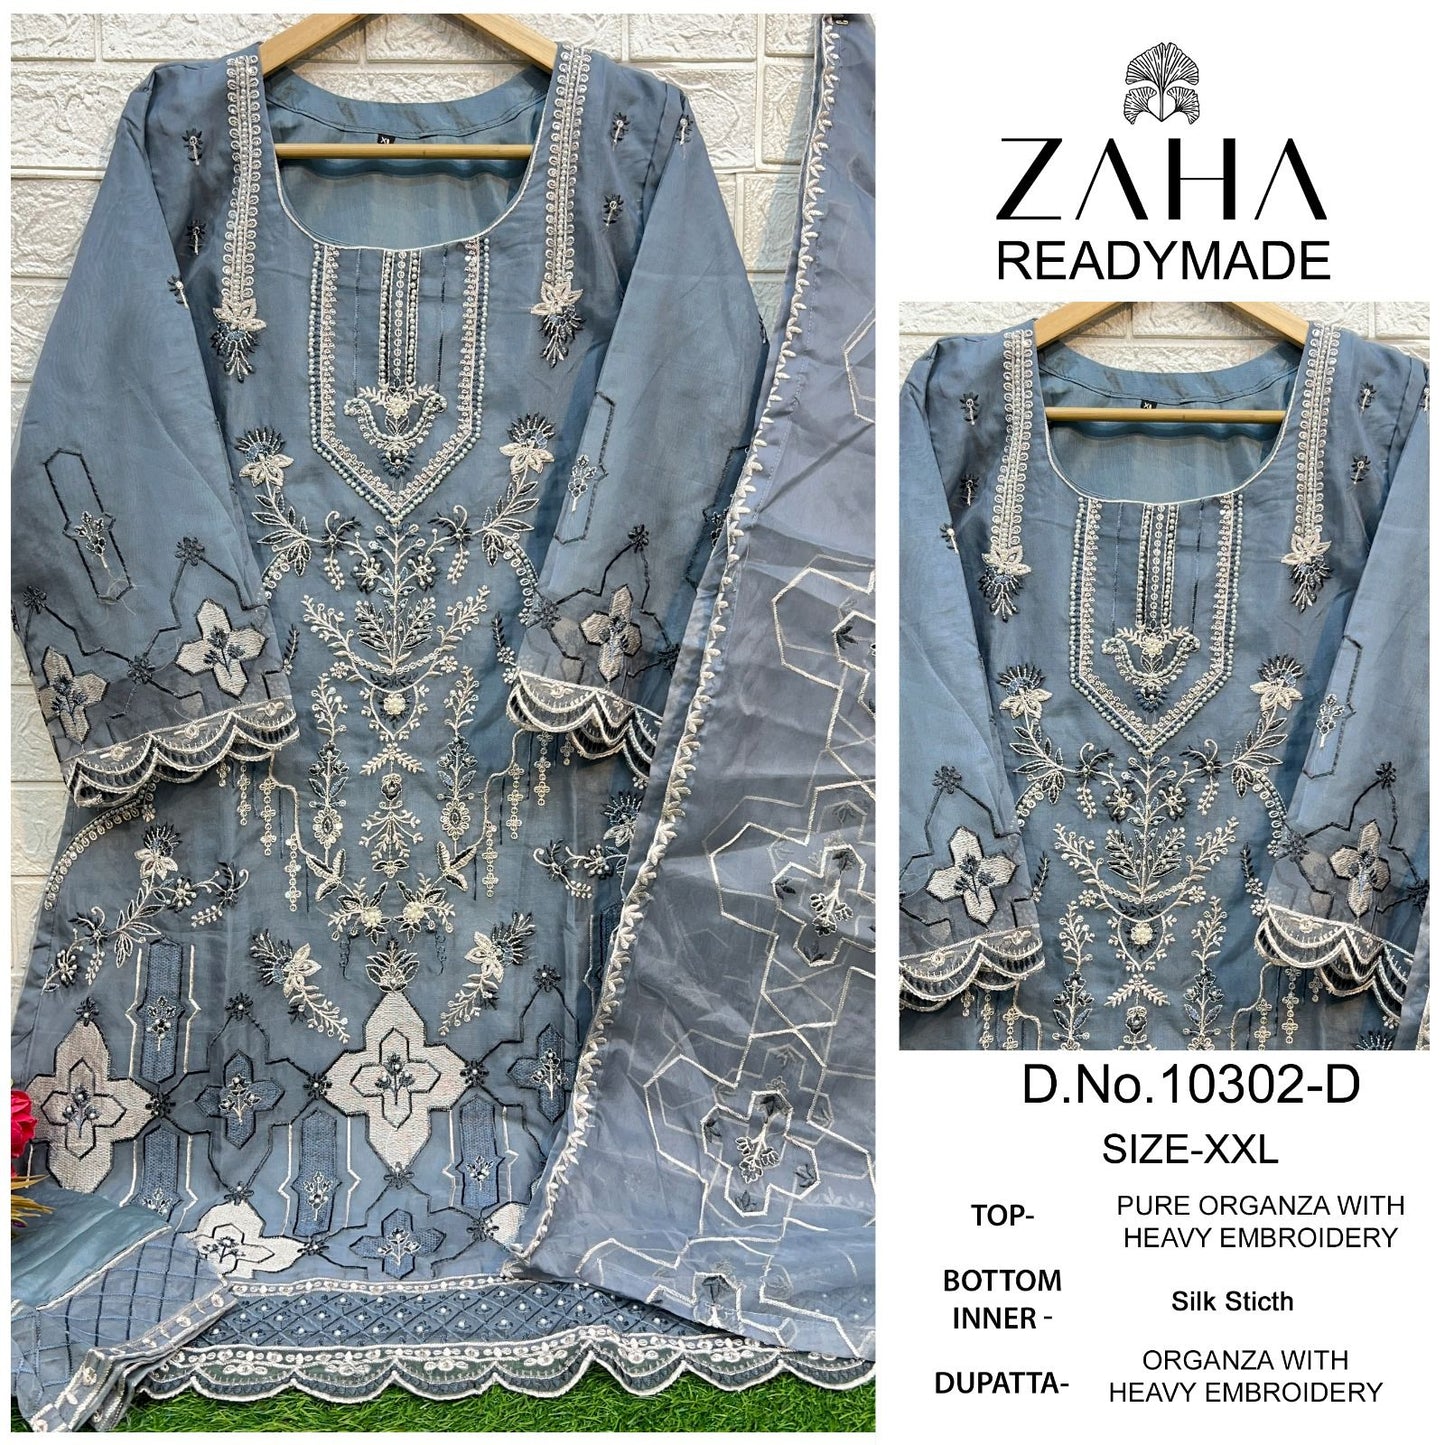 10302 Zaha Organza Pakistani Readymade Suits Wholesale Price